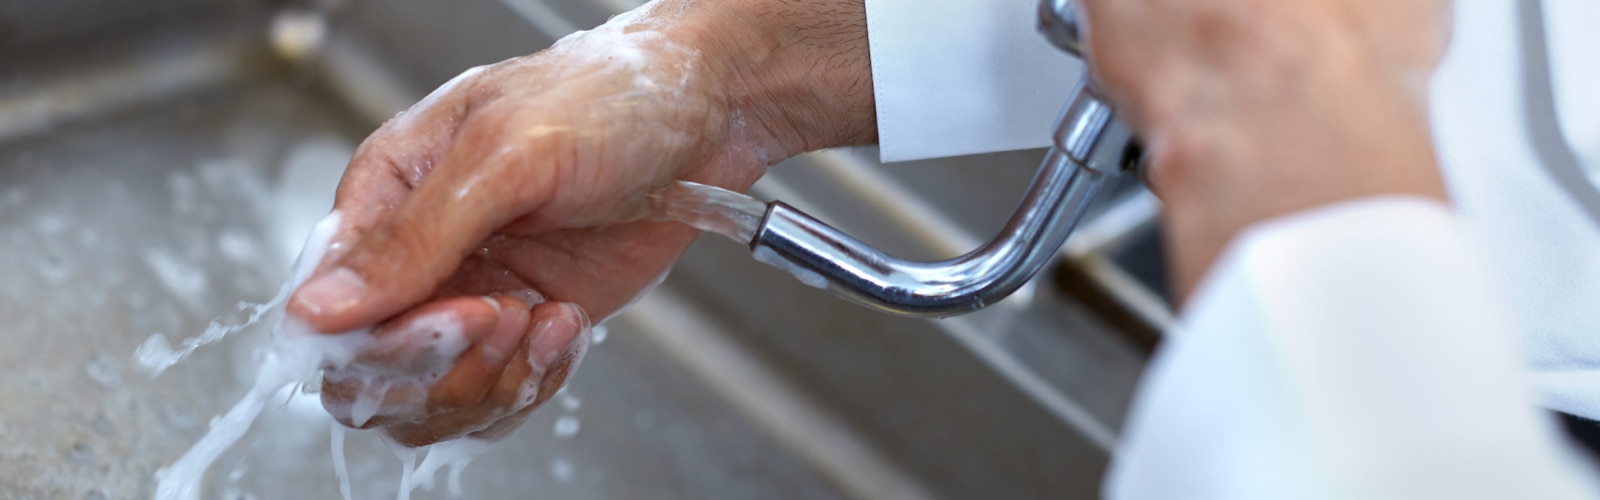 Mycie rąk w restauracjach i branży gastronomicznej